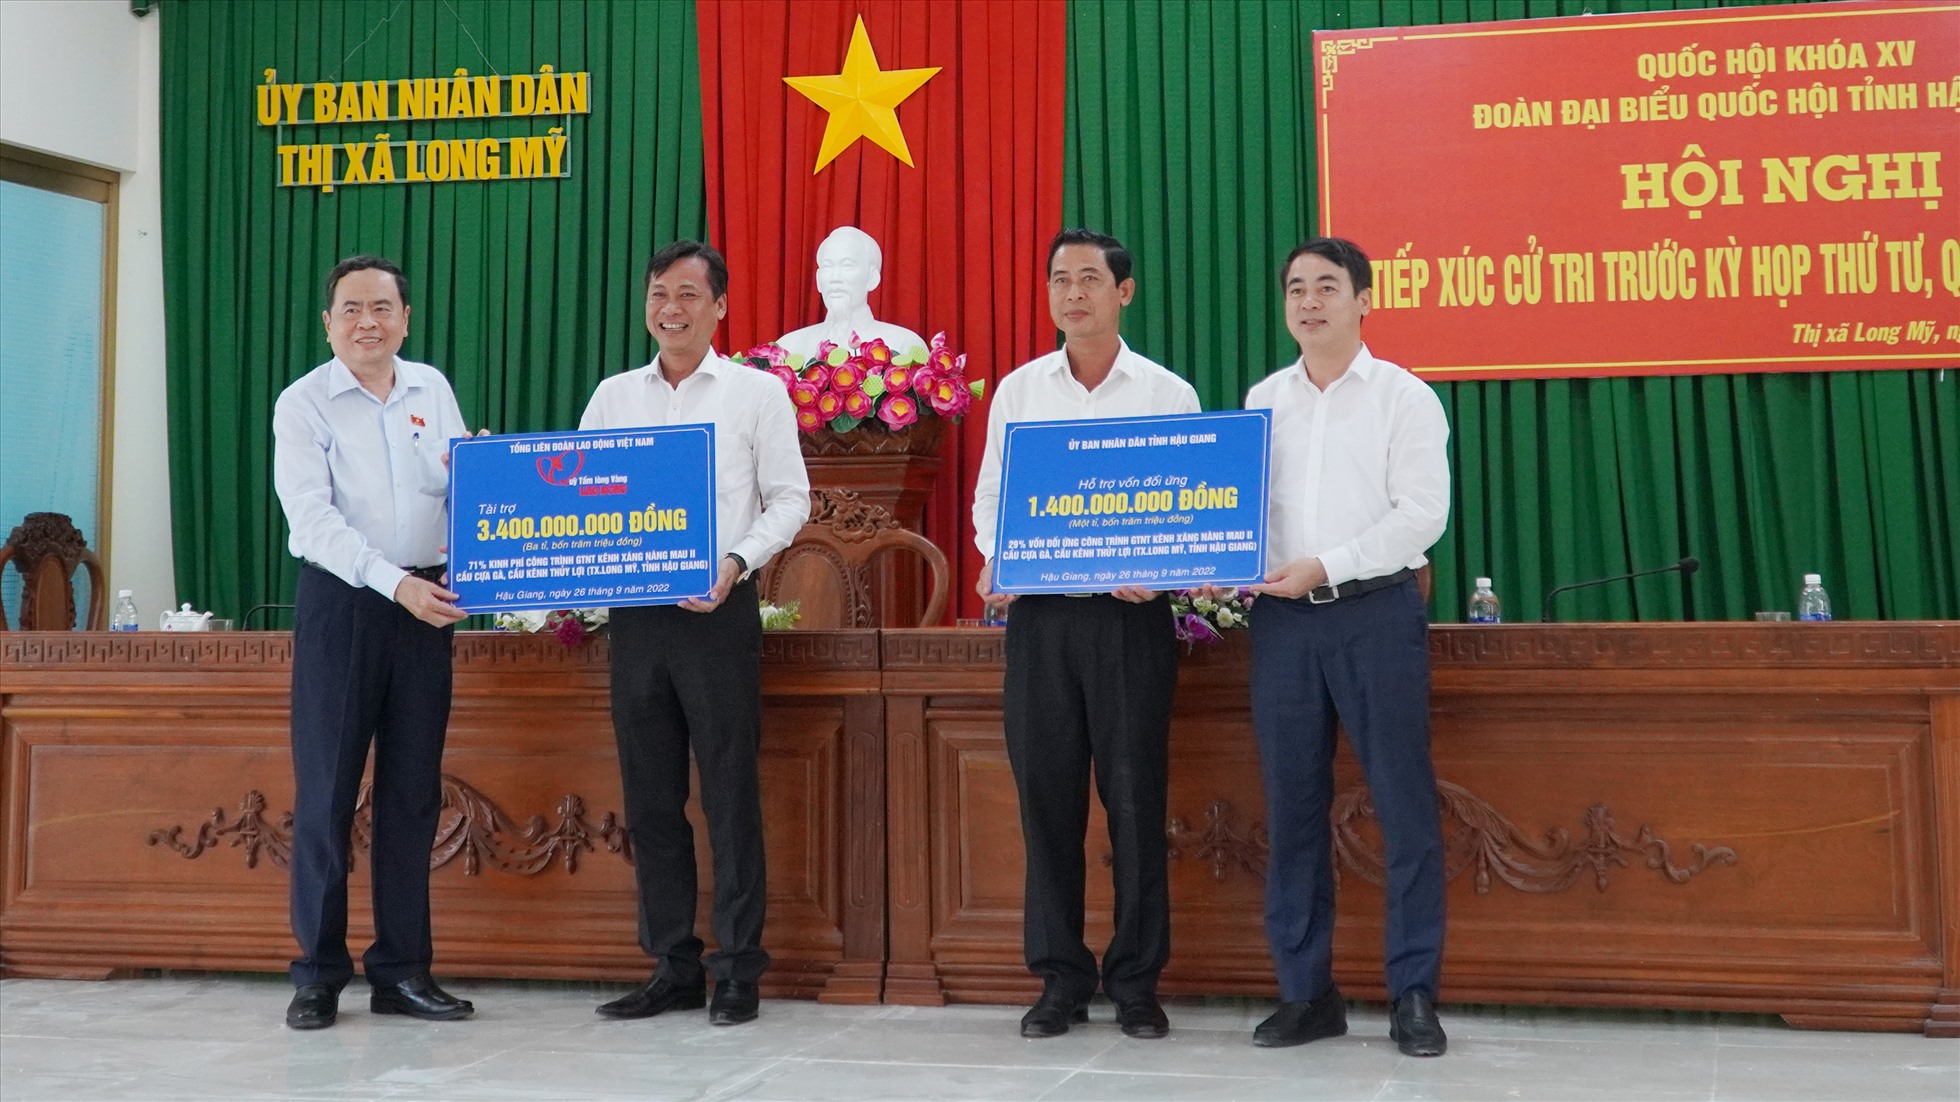 Phó Chủ tịch Thường trực Quốc hội Trần Thanh Mẫn cùng lãnh đạo tỉnh Hậu Giang  trao biển tượng trưng tài trợ làm đường.